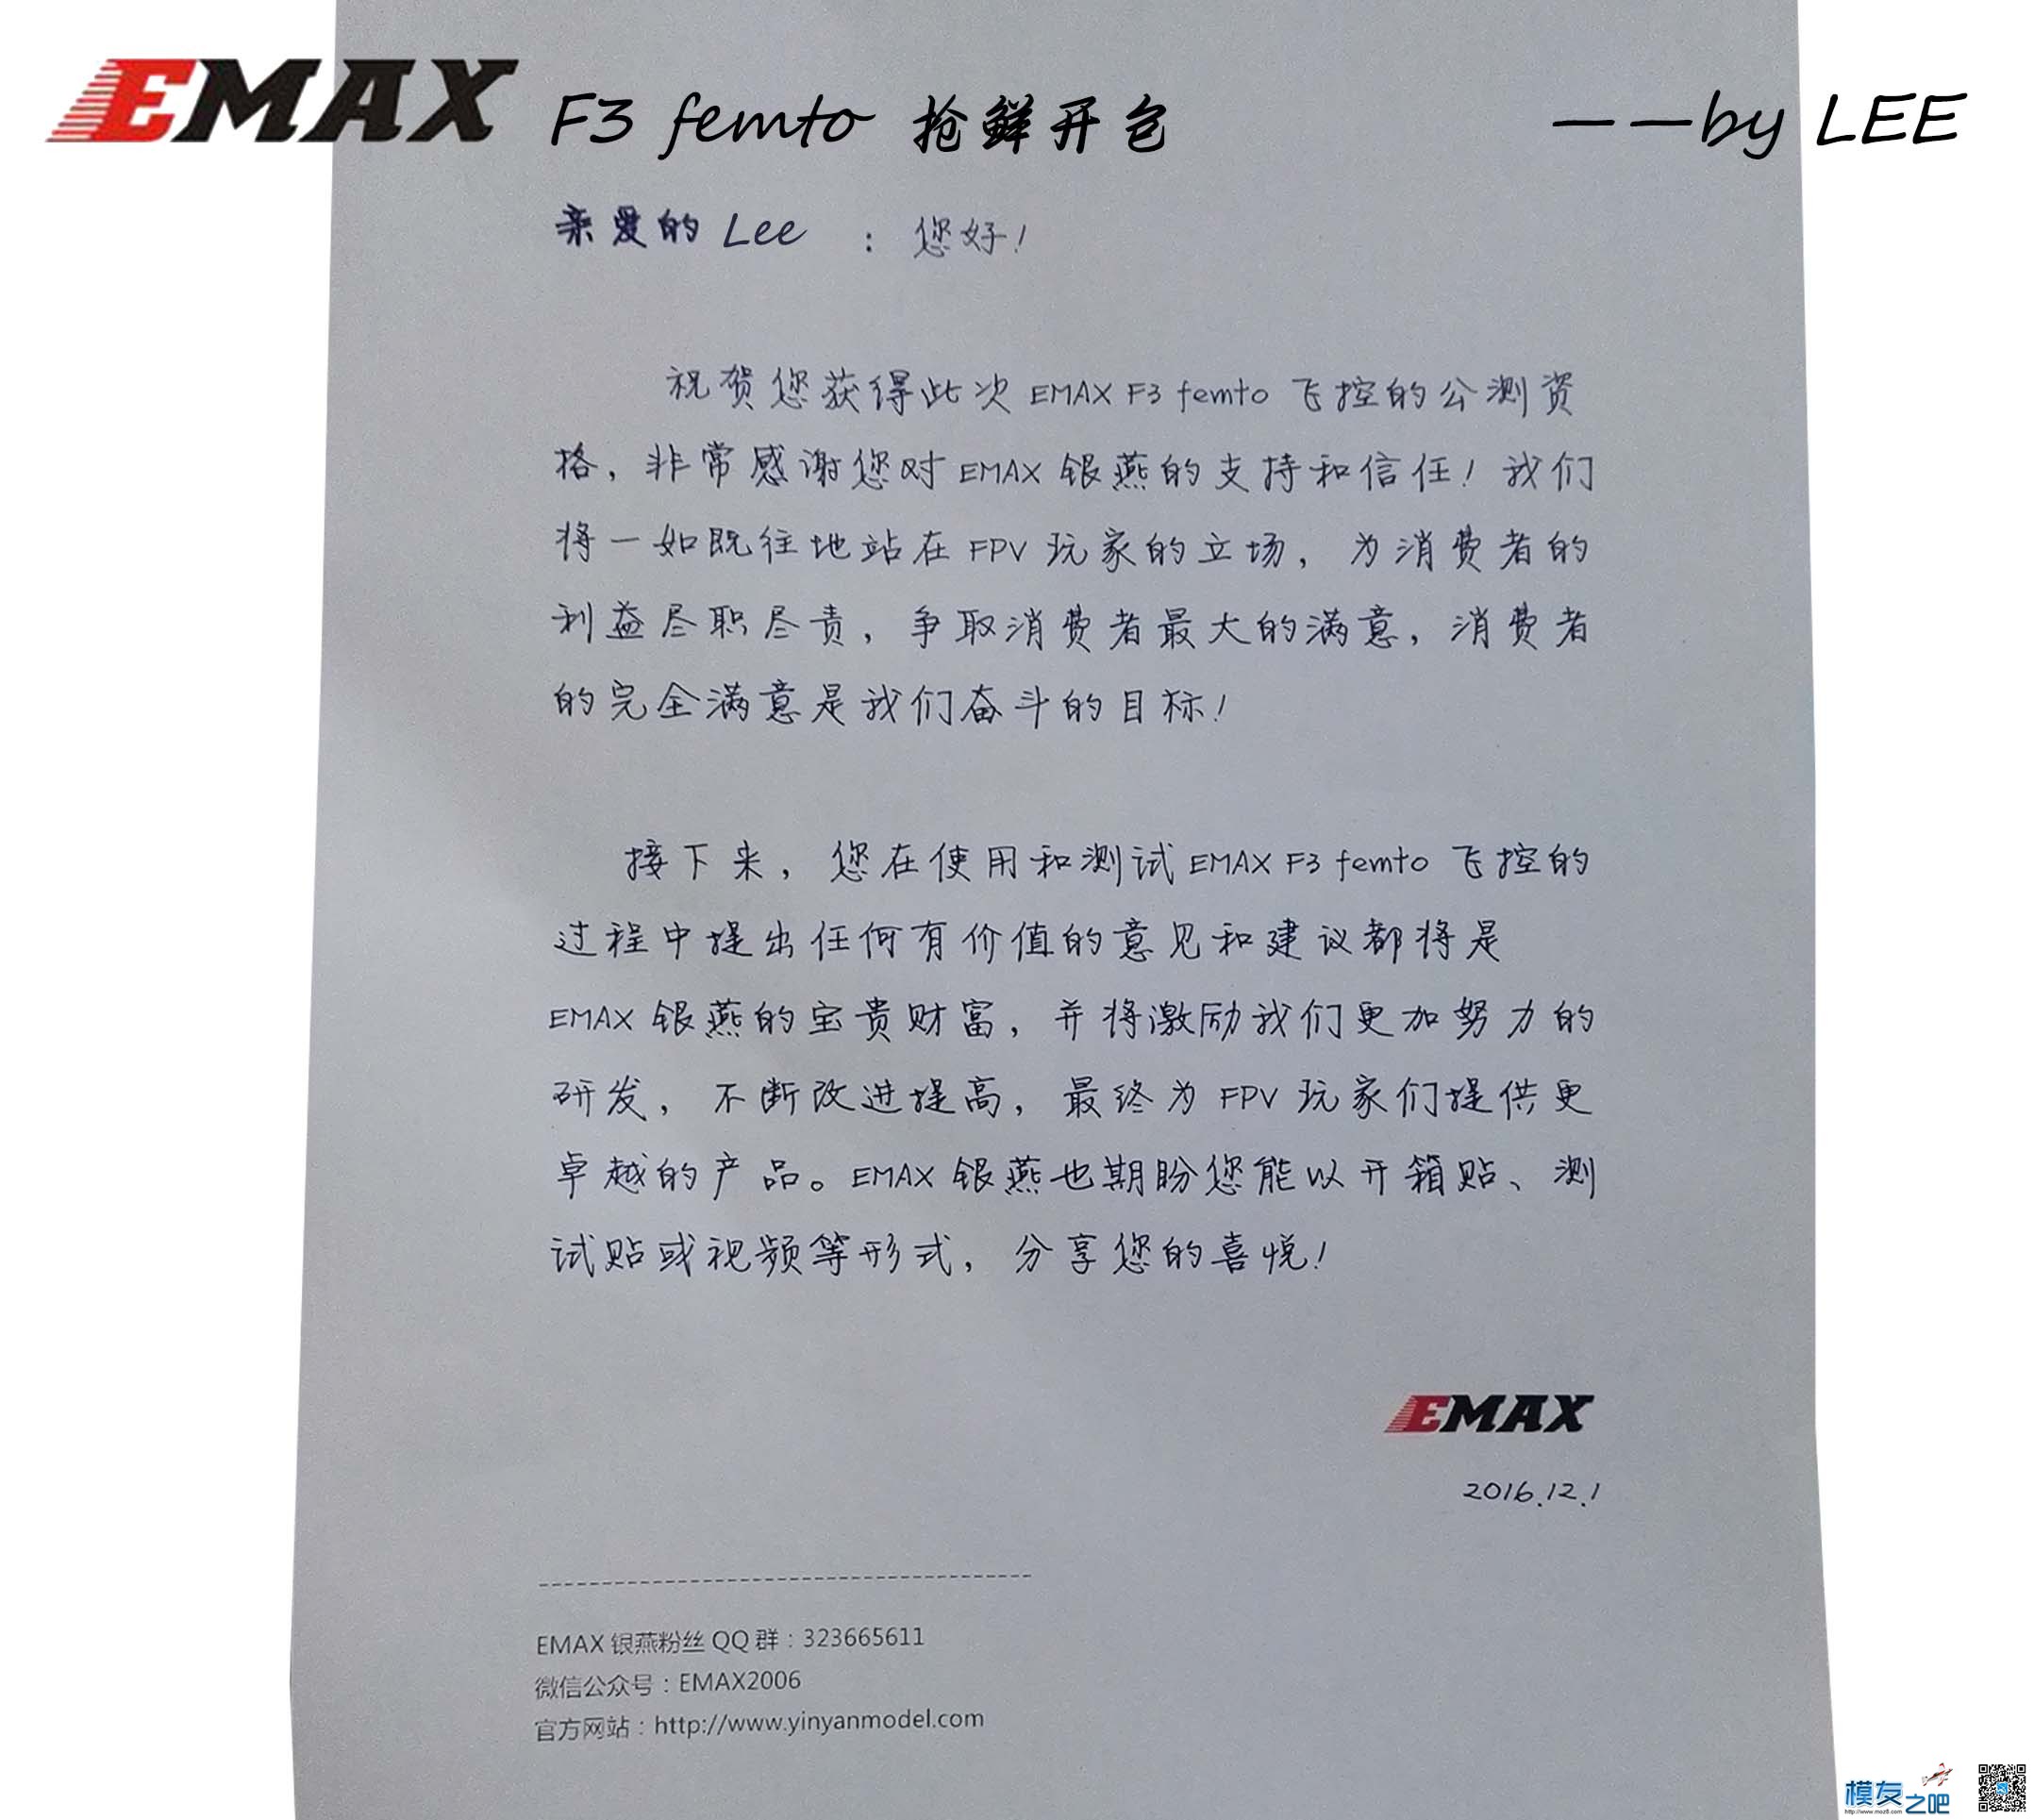 [LEE]EMAX 银燕 F3 femto飞控免费公测开包 飞控,银燕,免费,emax,有限公司 作者:lee 2232 